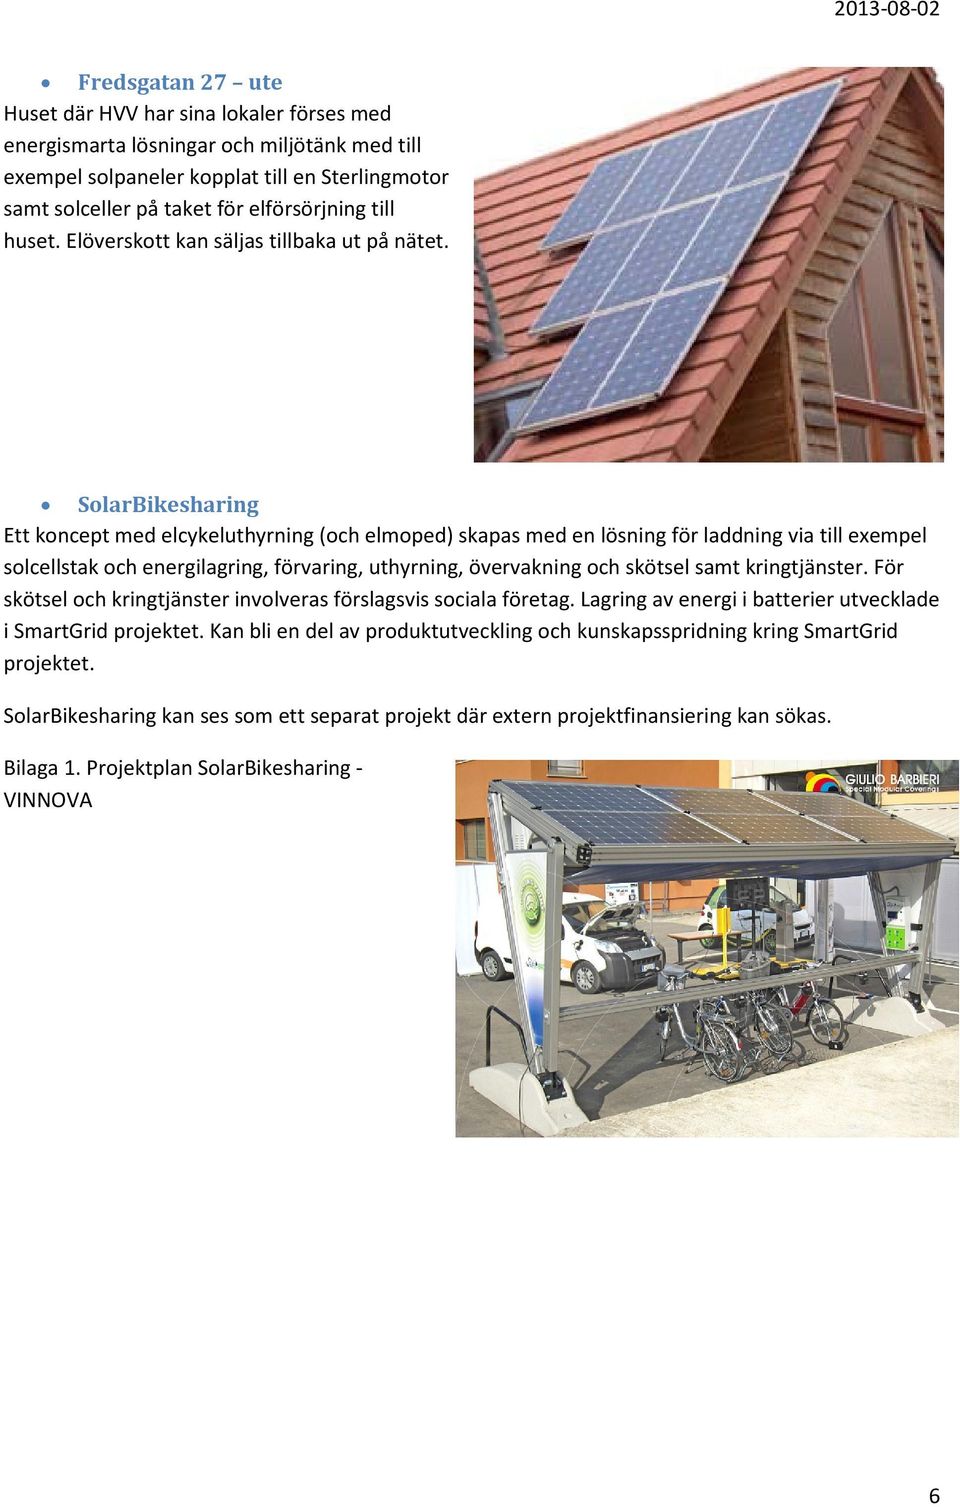 SolarBikesharing Ett koncept med elcykeluthyrning (och elmoped) skapas med en lösning för laddning via till exempel solcellstak och energilagring, förvaring, uthyrning, övervakning och skötsel samt